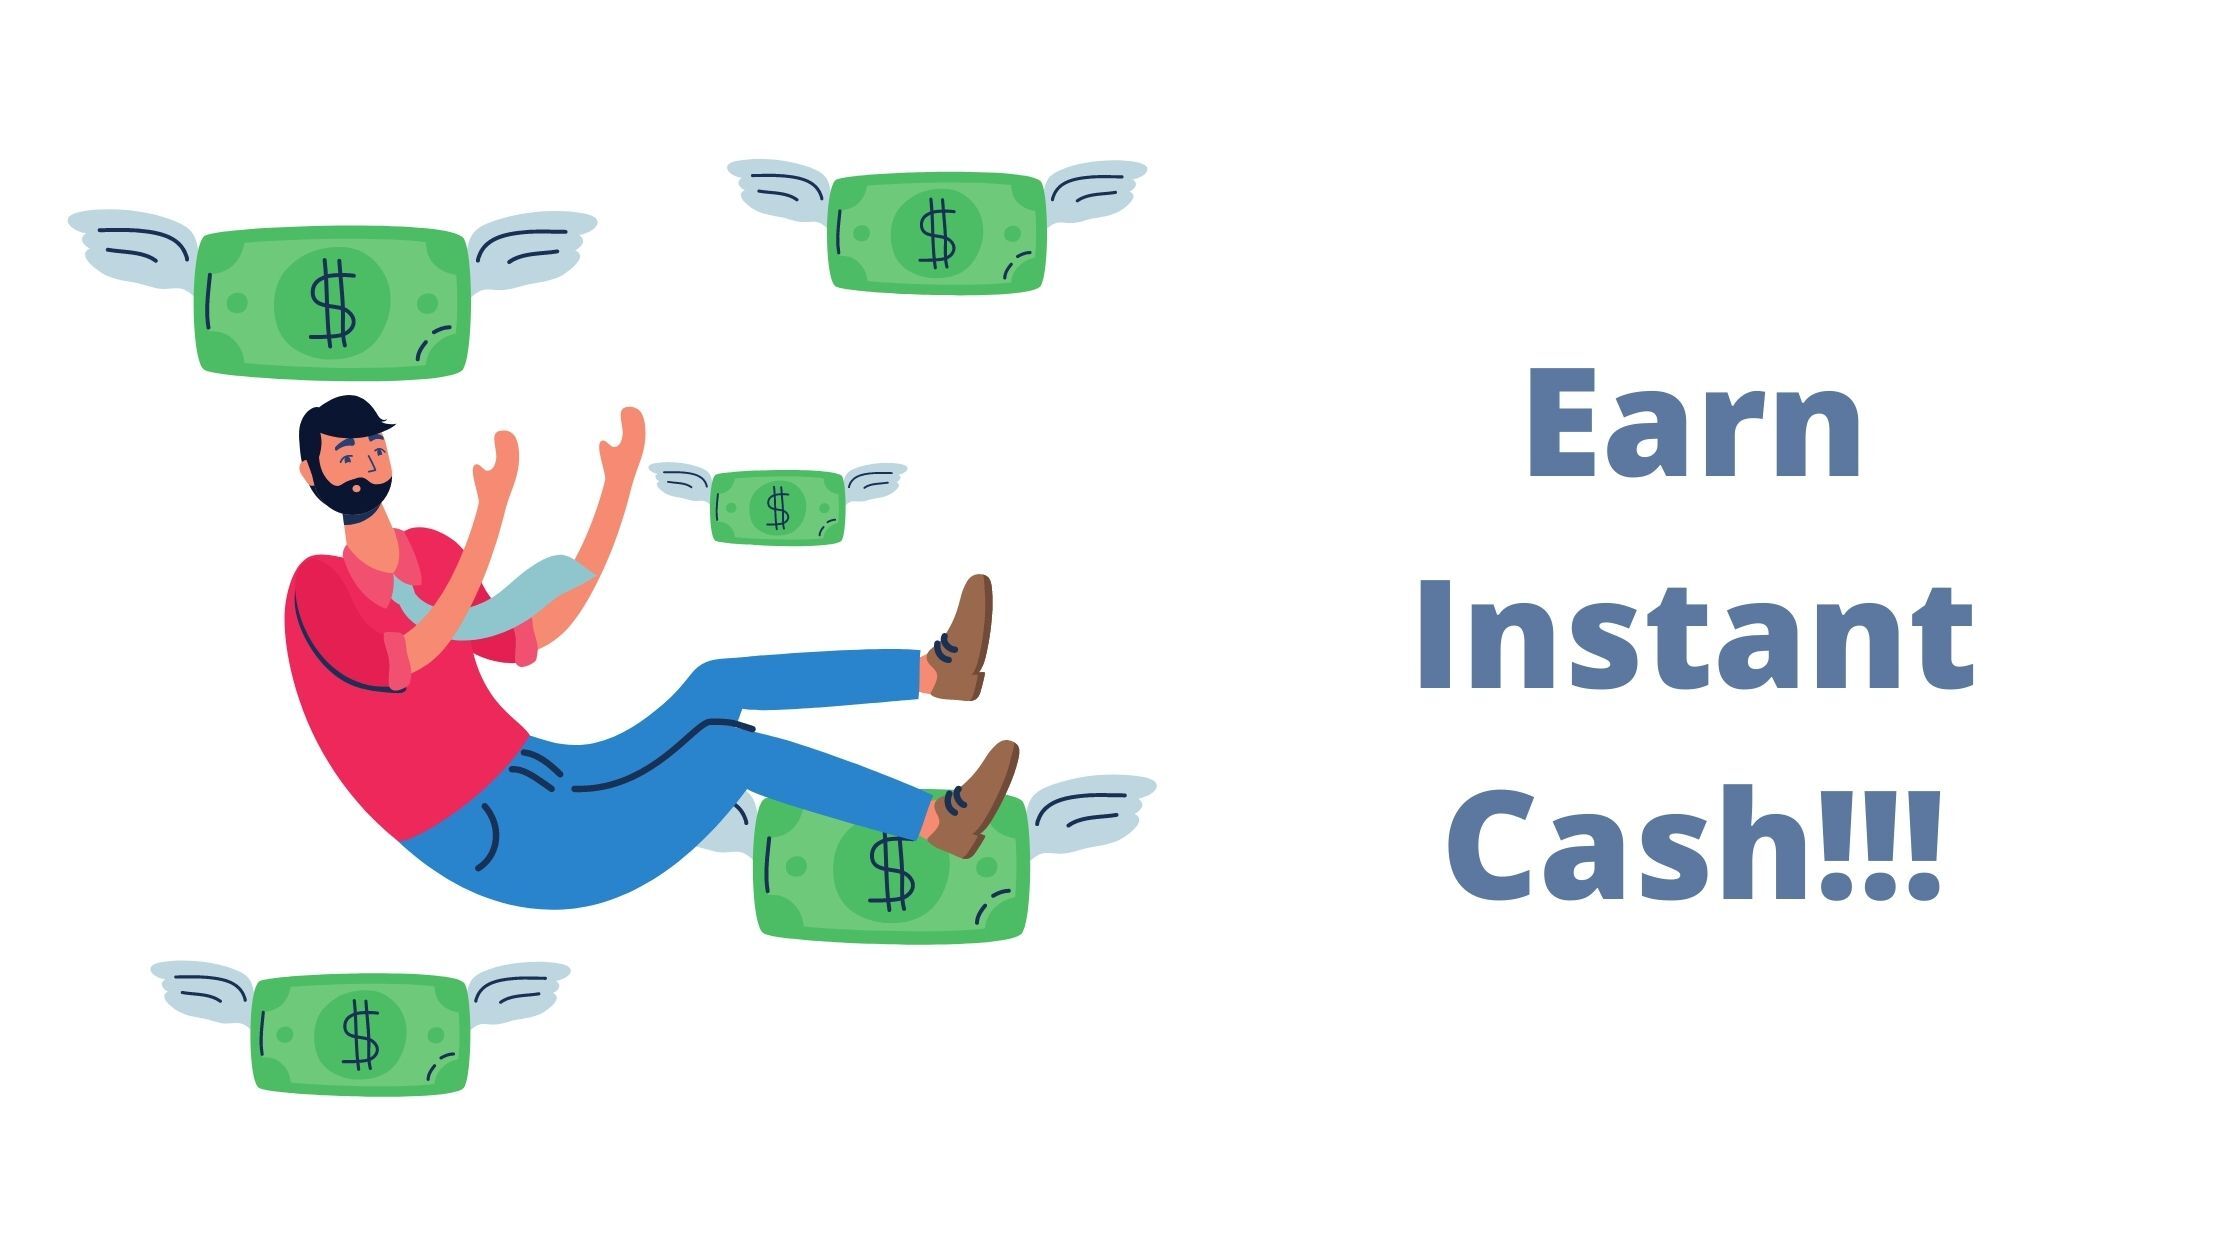 Earn instant cash